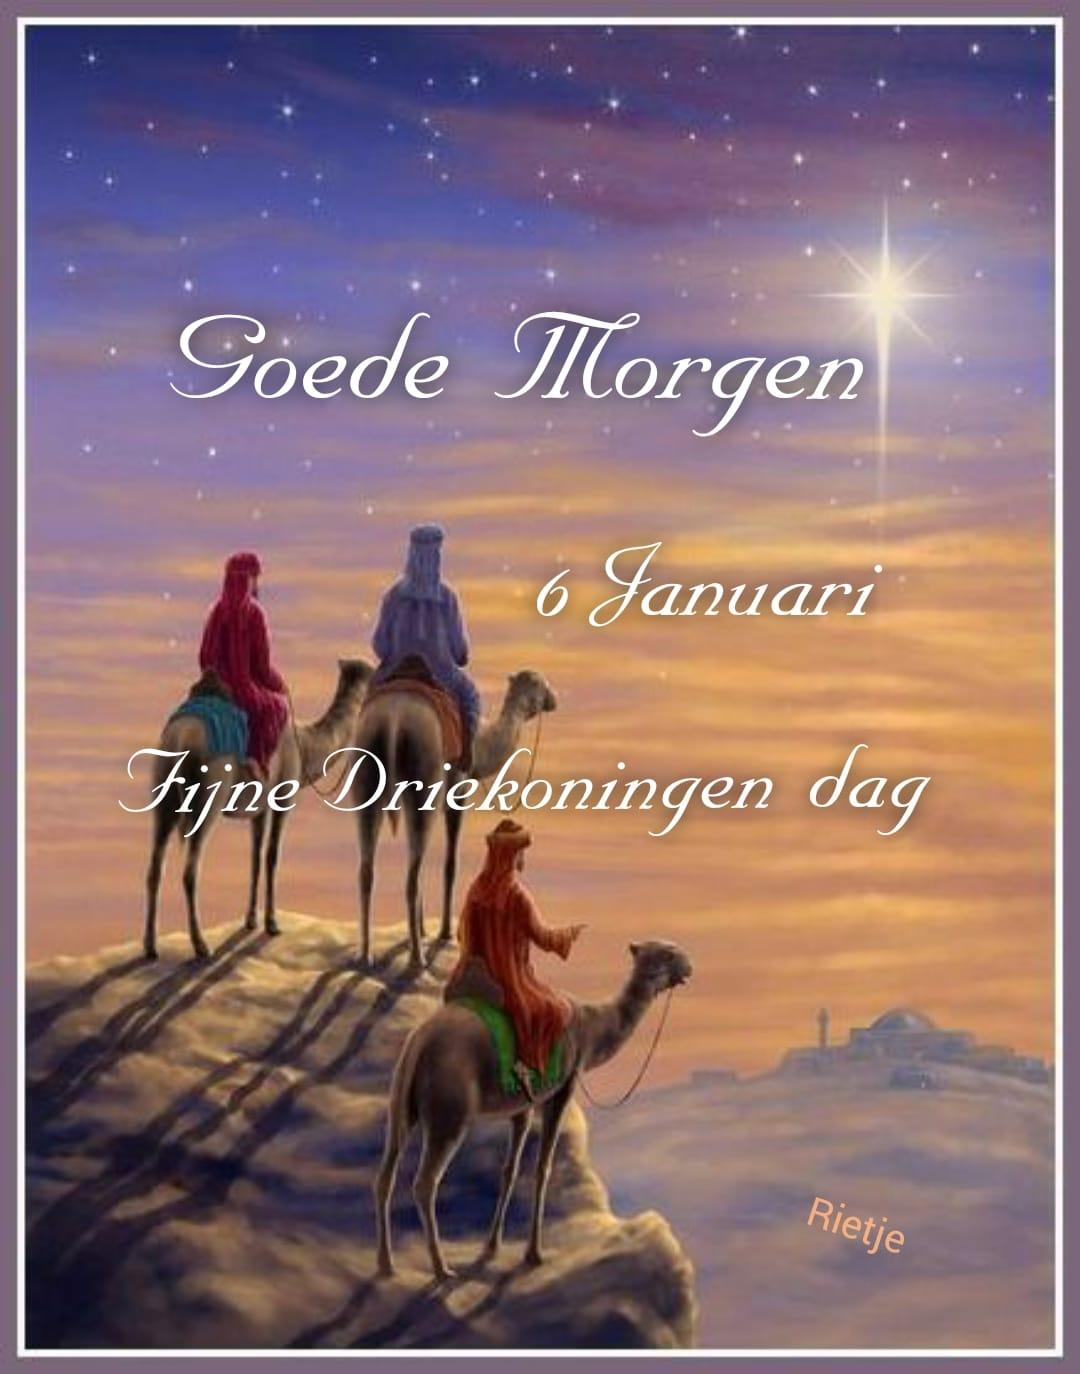 Goede Morgen. 6 Januari, Fijne Driekoningen dag.